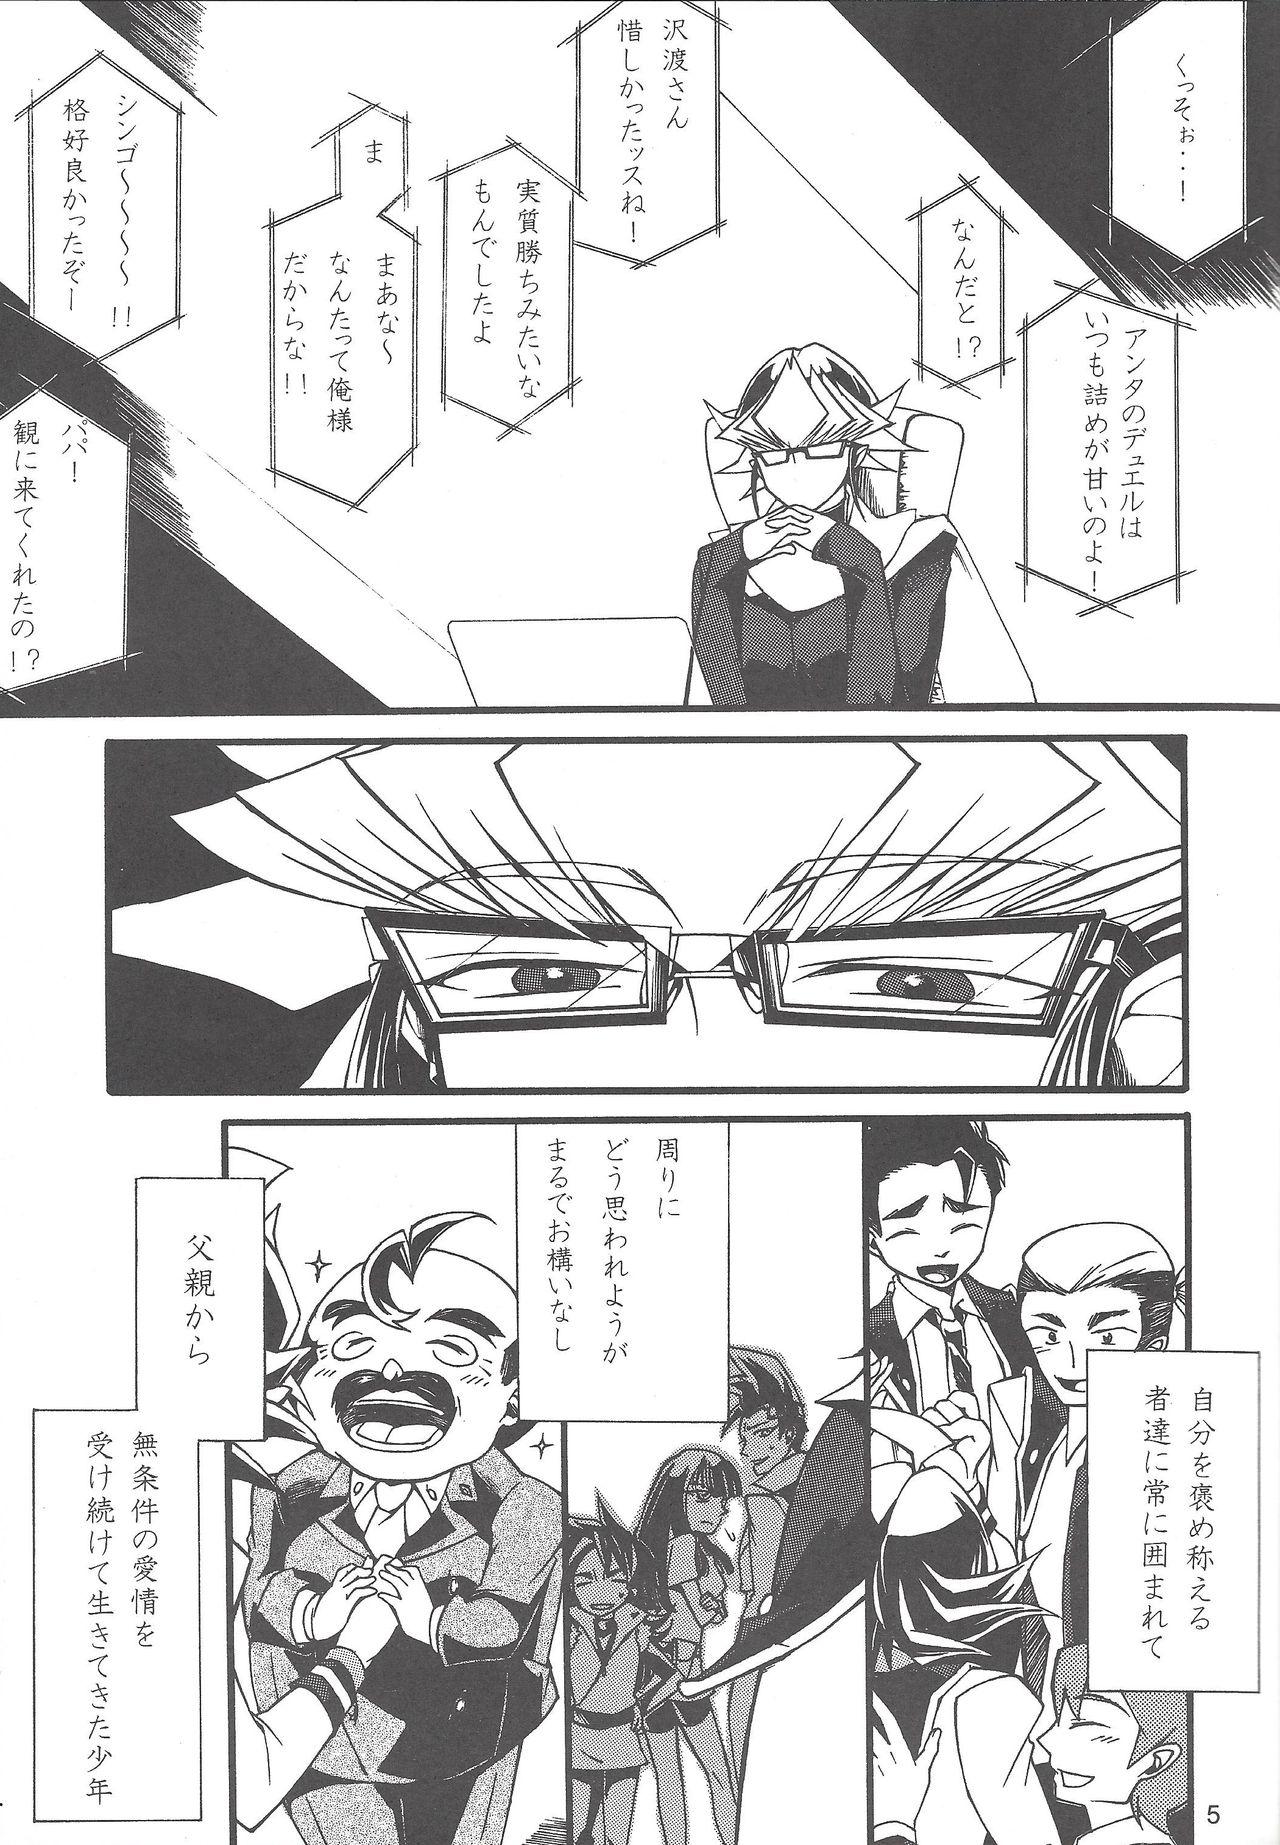 Storyline Uso-tsuki akuma no koi - Yu-gi-oh arc-v Brasileira - Page 4